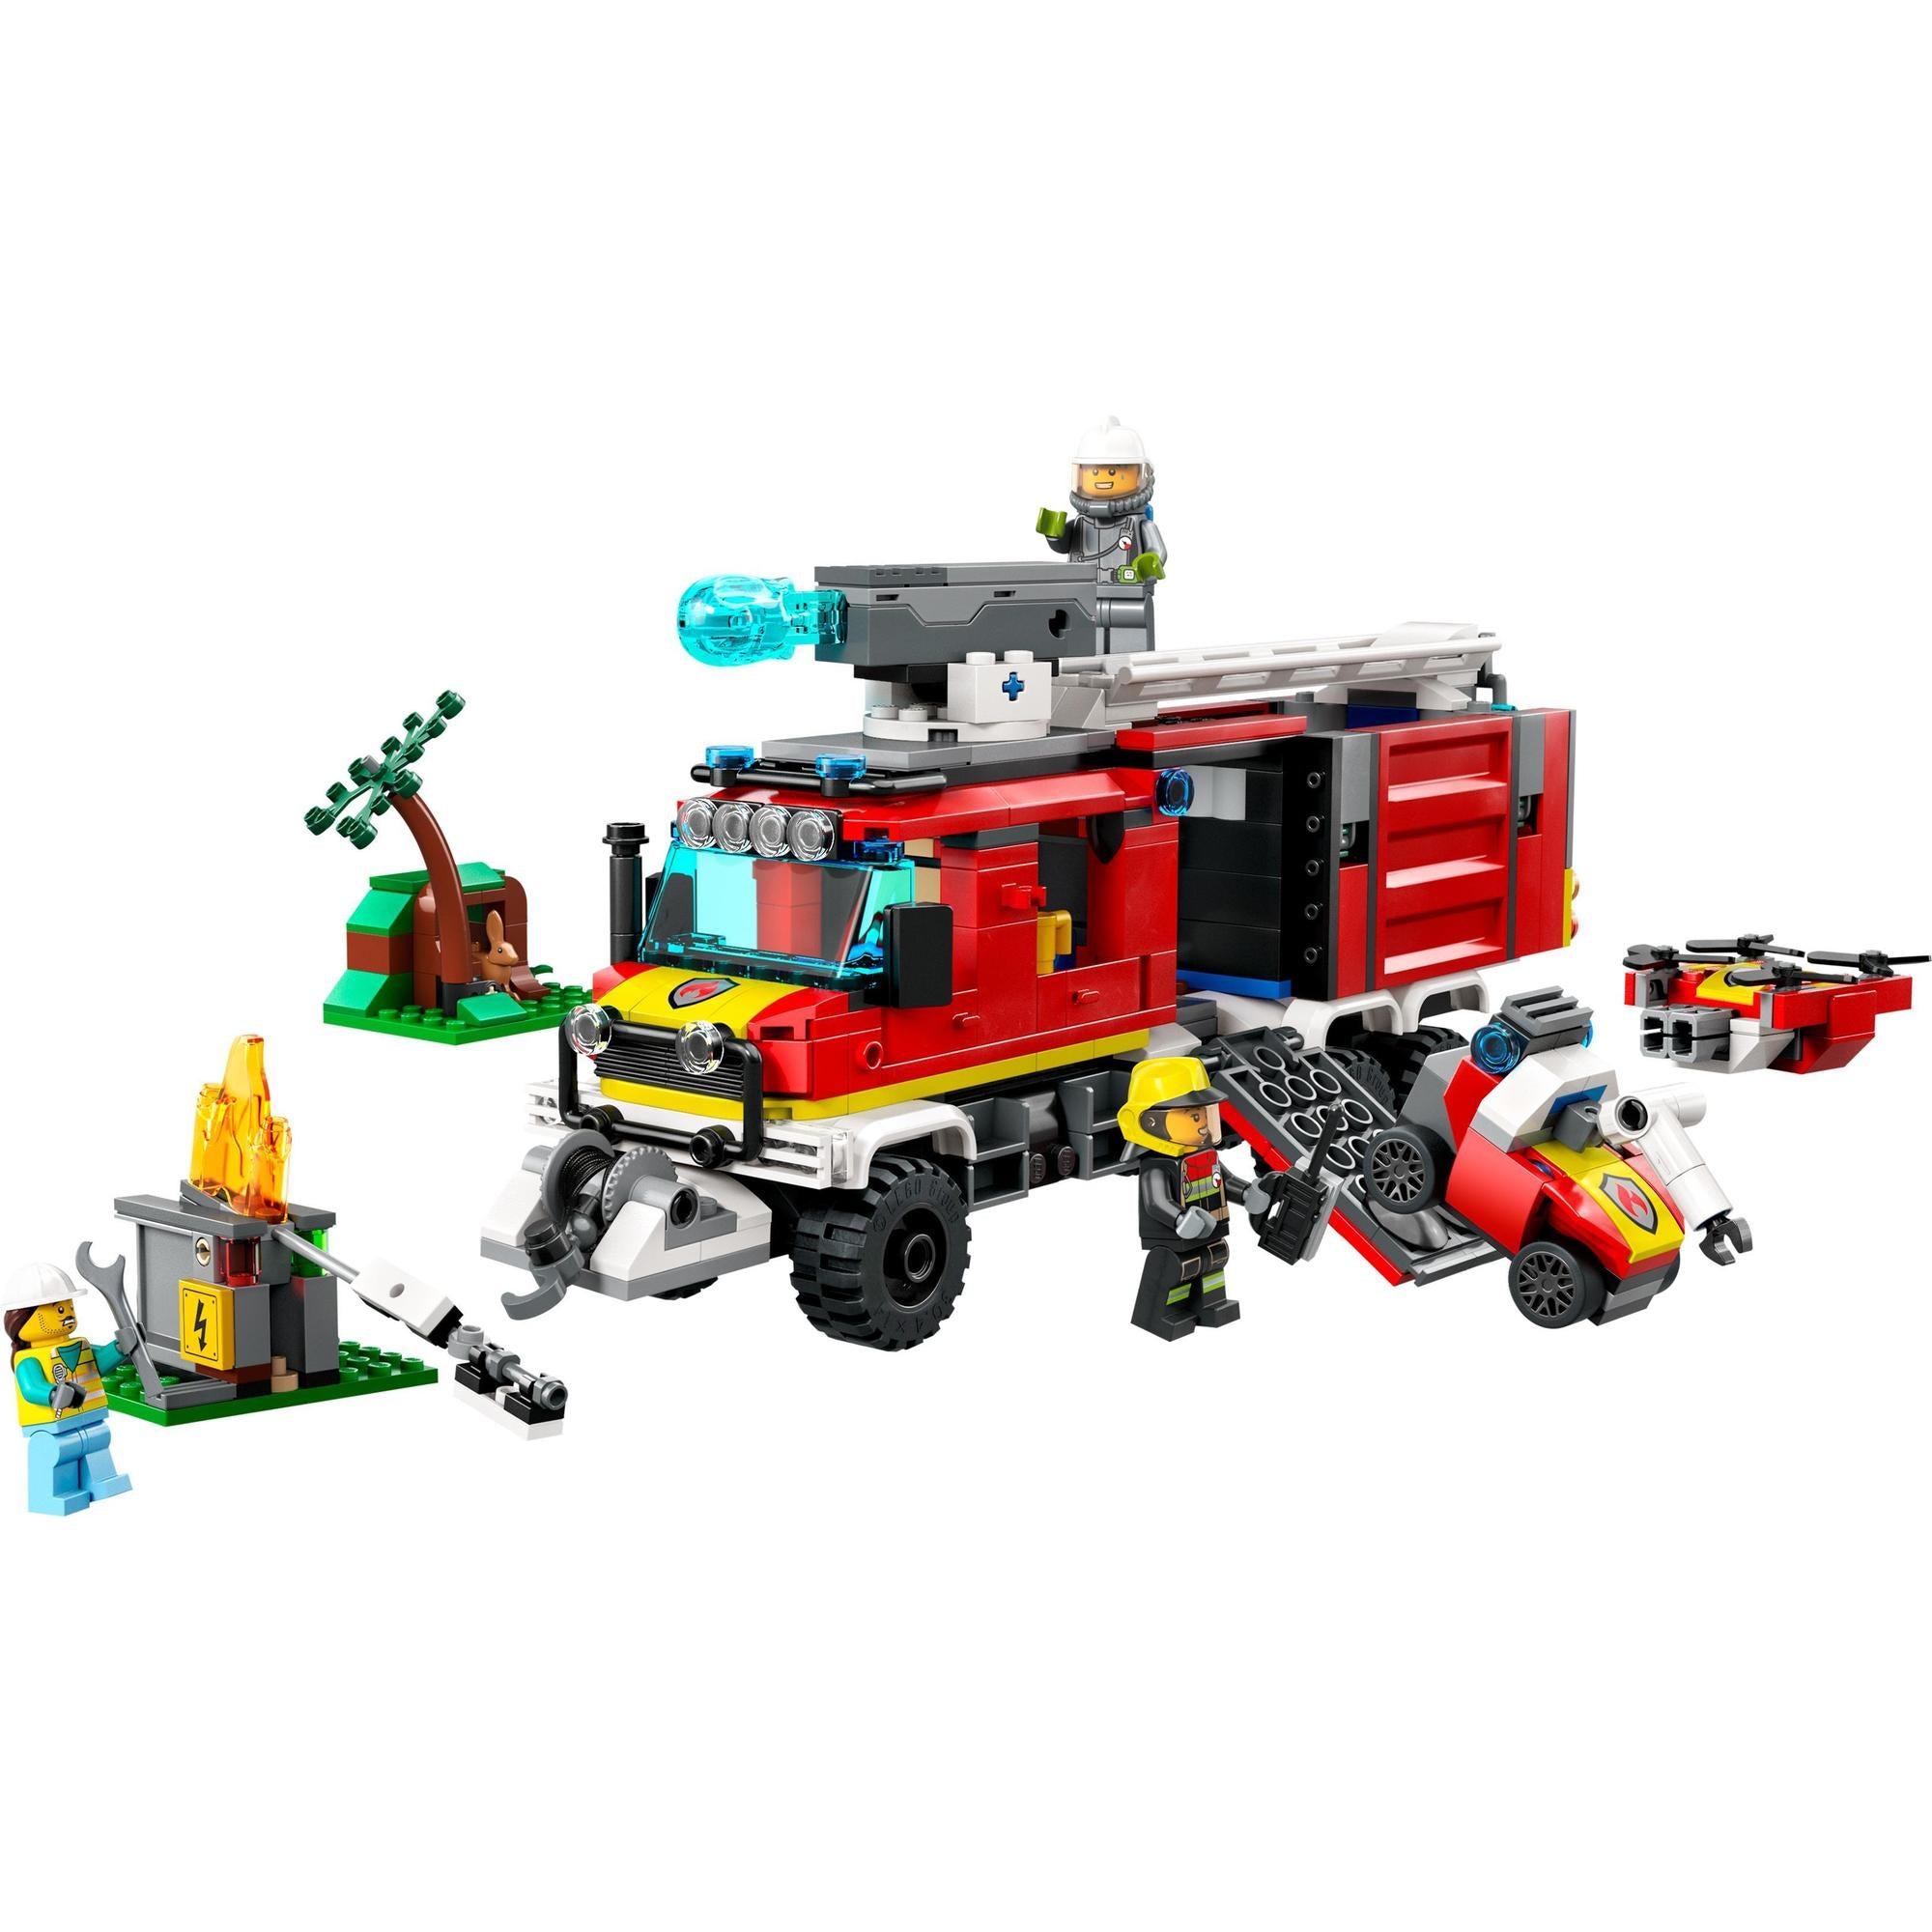 LEGO® | 60374 | Einsatzleitwagen der Feuerwehr